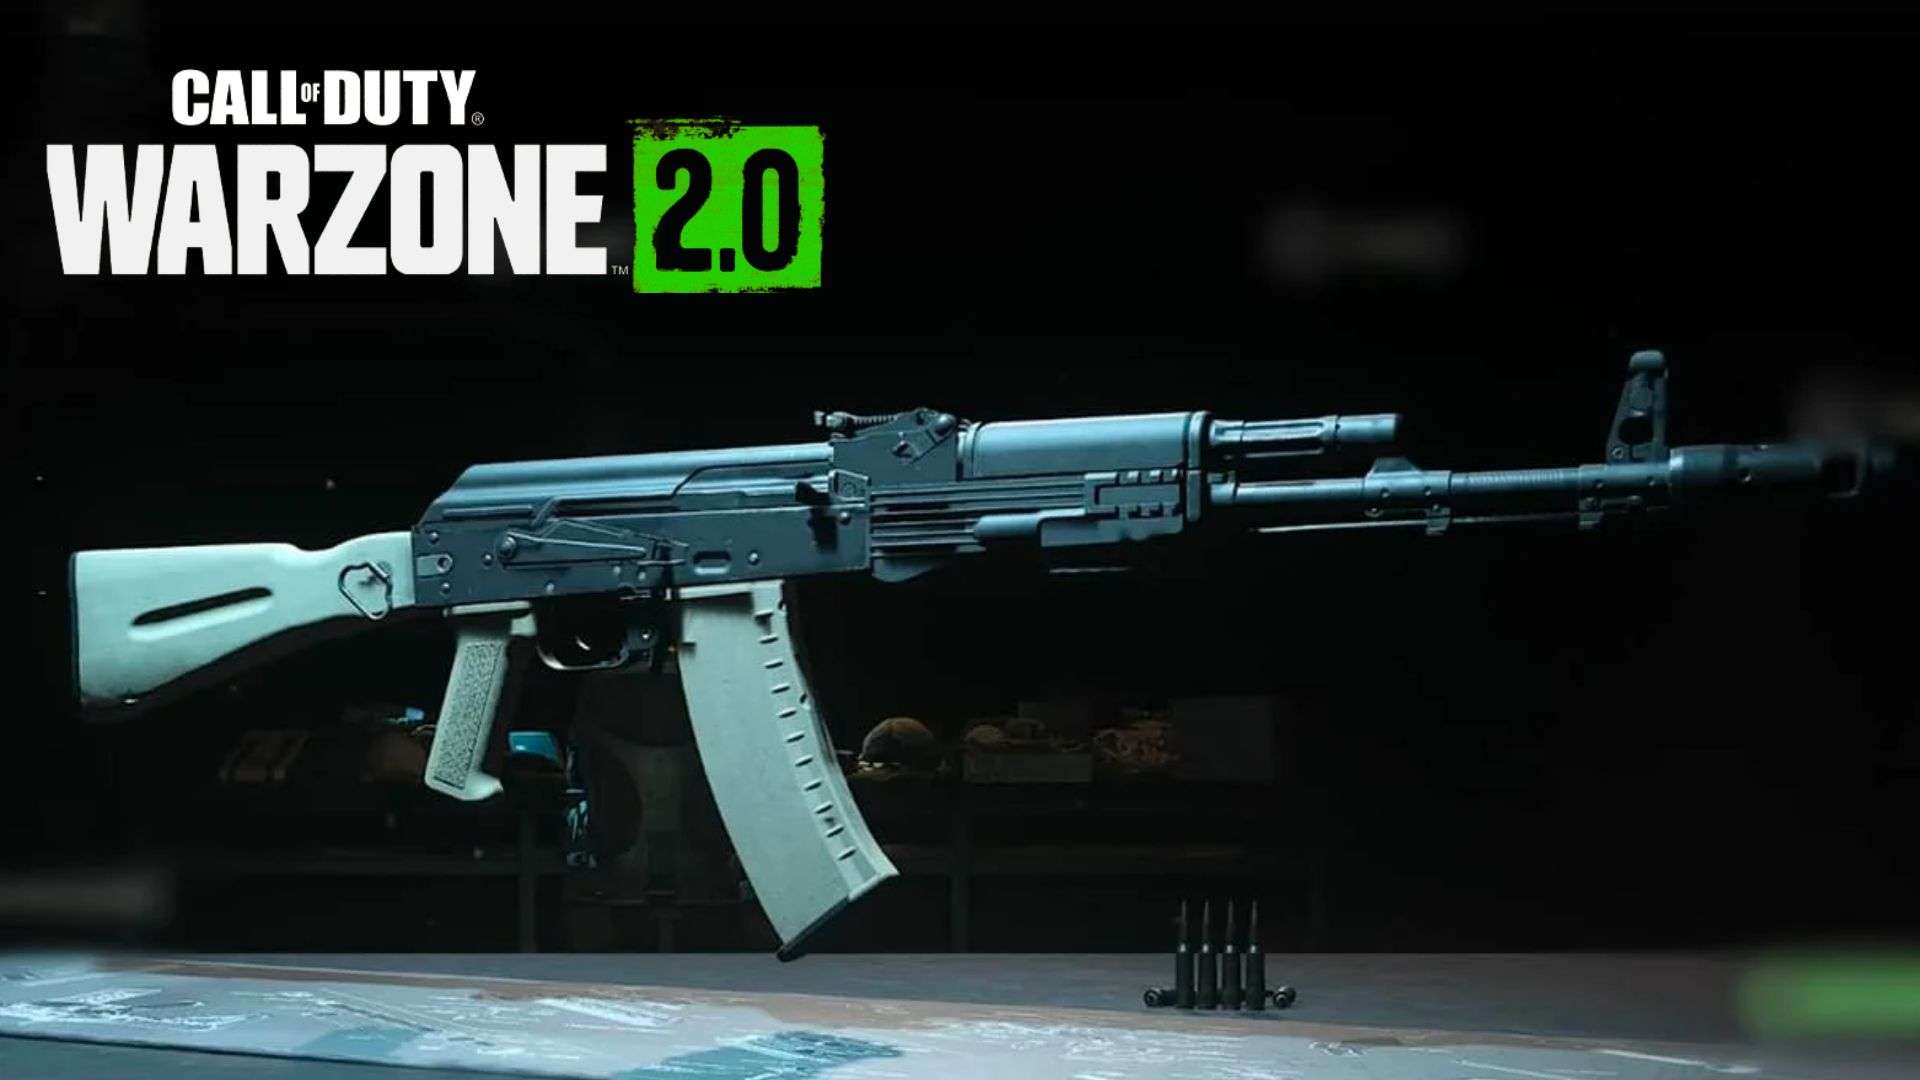 Kastov 762 in Warzone 2 gunsmith mode